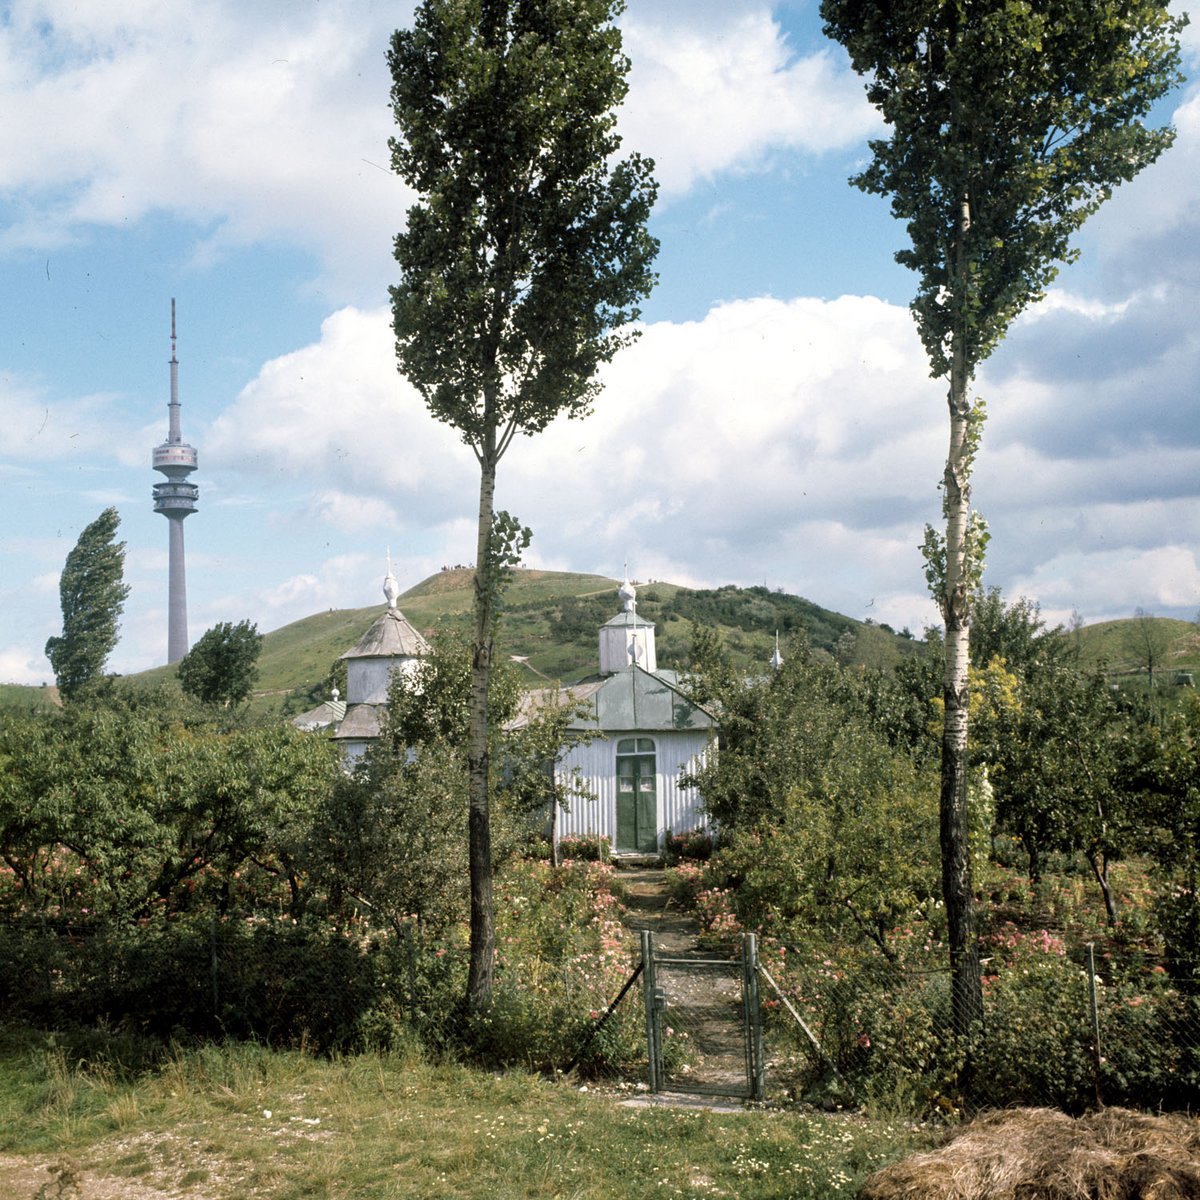 Fotografie einer Kirche in einem Park. Im Hintergrund ein Fernsehturm und ein Hügel. 